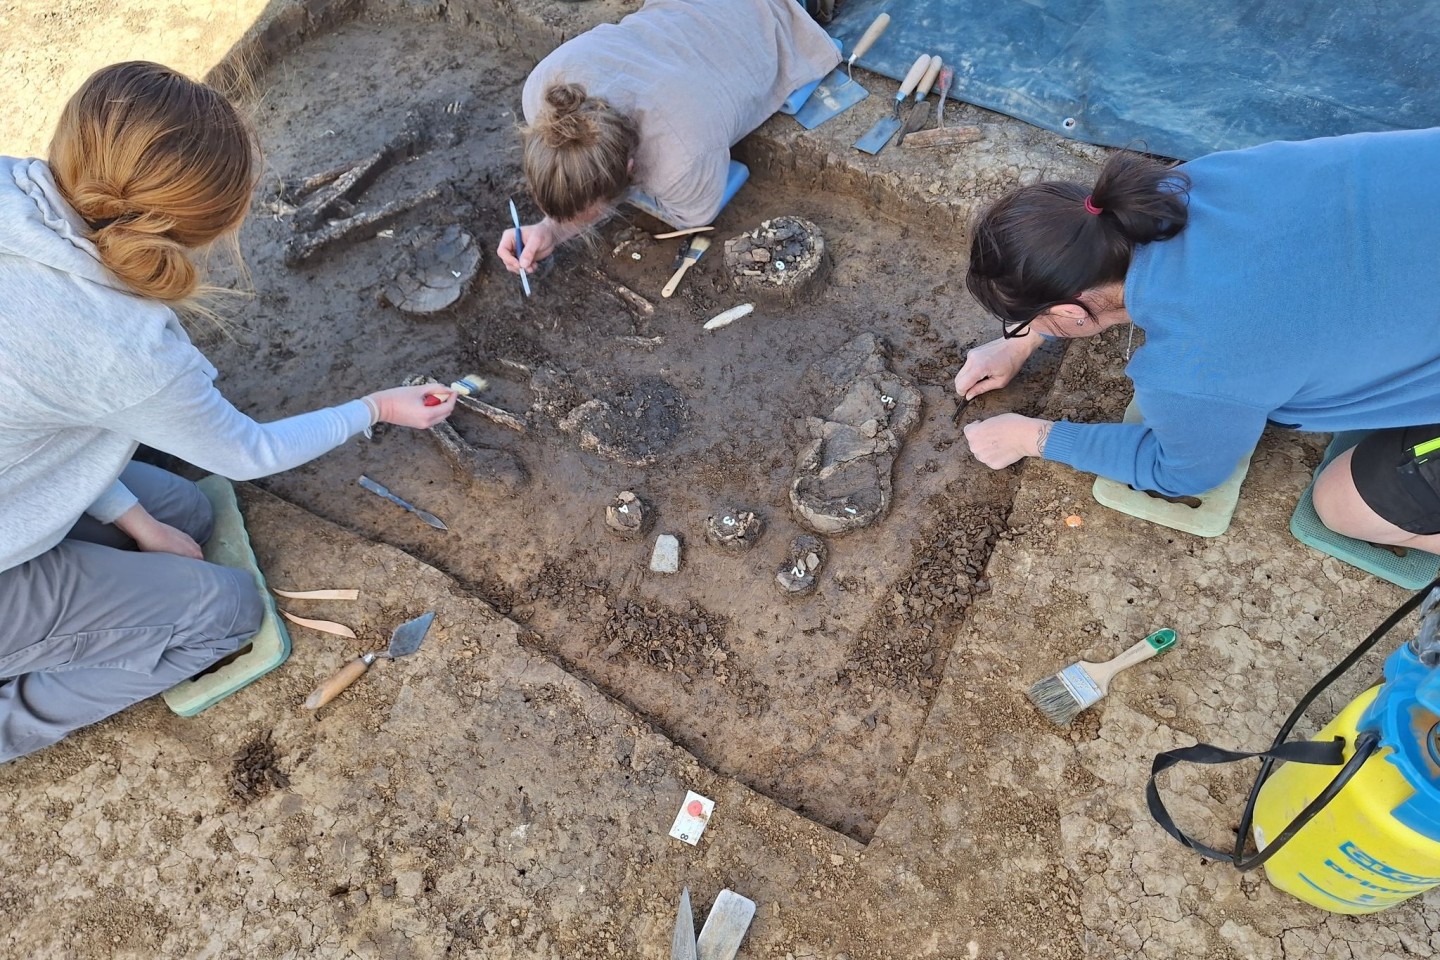 Das Grab im Ortsteil Exing, nach dem das Skelett als «Exinger» bezeichnet wird, wurde bei einer Untersuchung vor Bauarbeiten entdeckt.